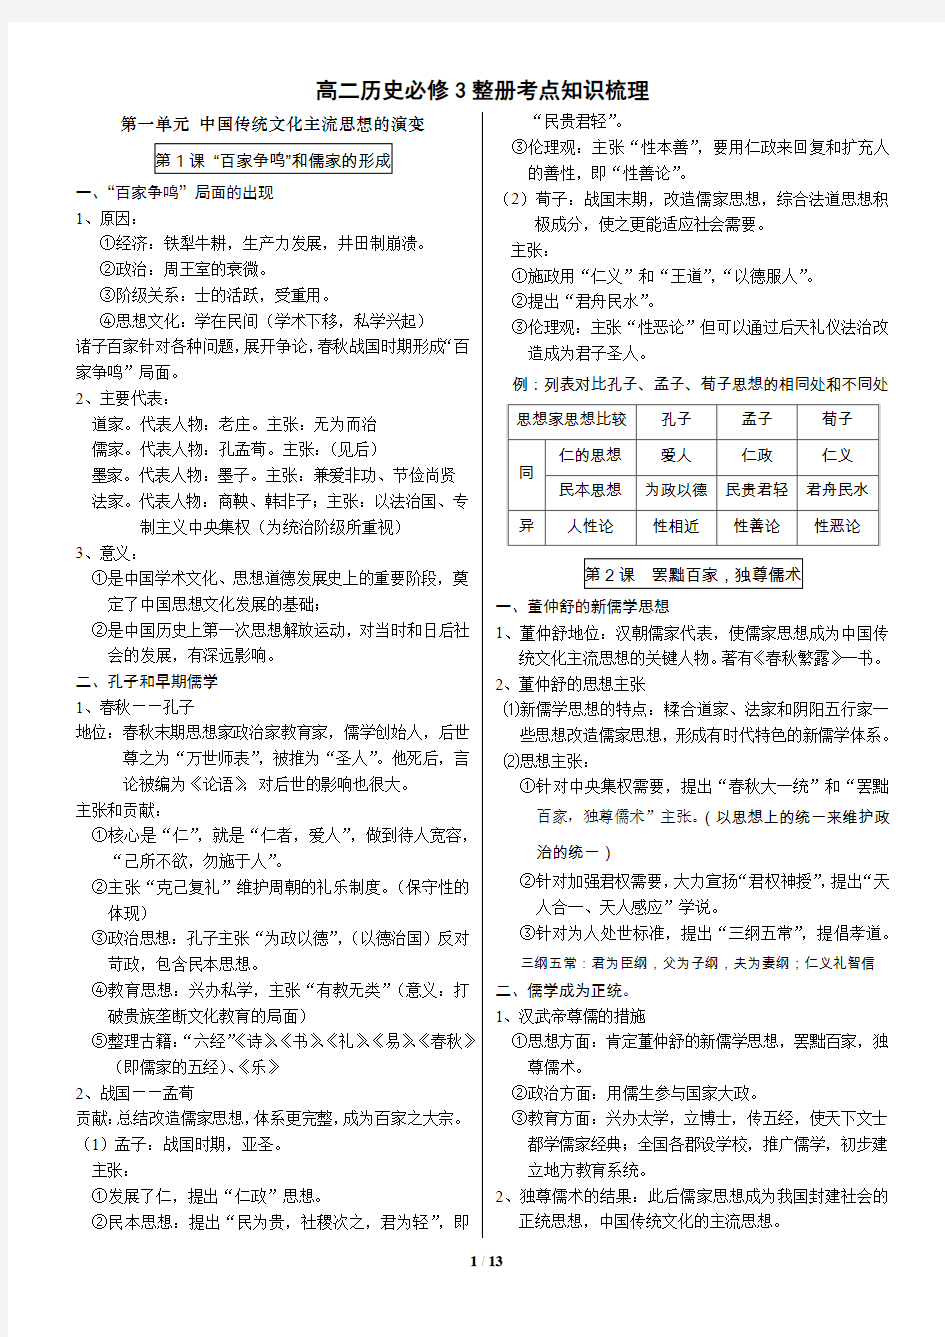 高二历史必修3 中国部分 复习手册 考点知识梳理 打印版